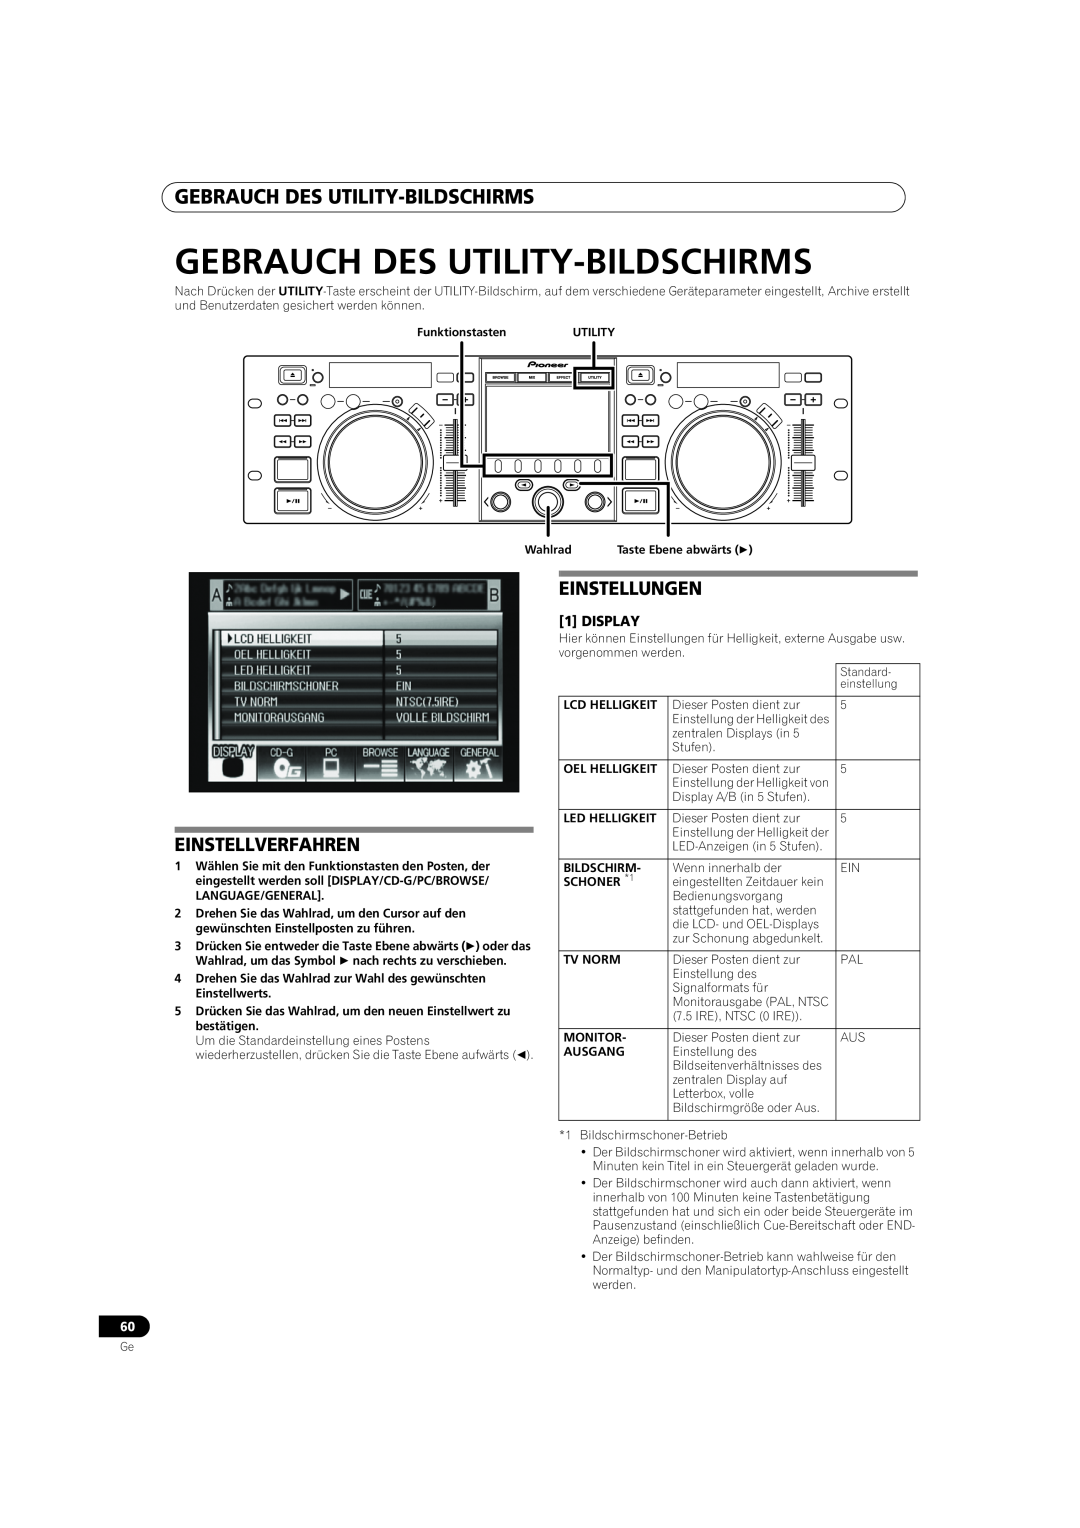 Pioneer MEP-7000 operating instructions Gebrauch Des Utility-Bildschirms, Einstellverfahren, Einstellungen 